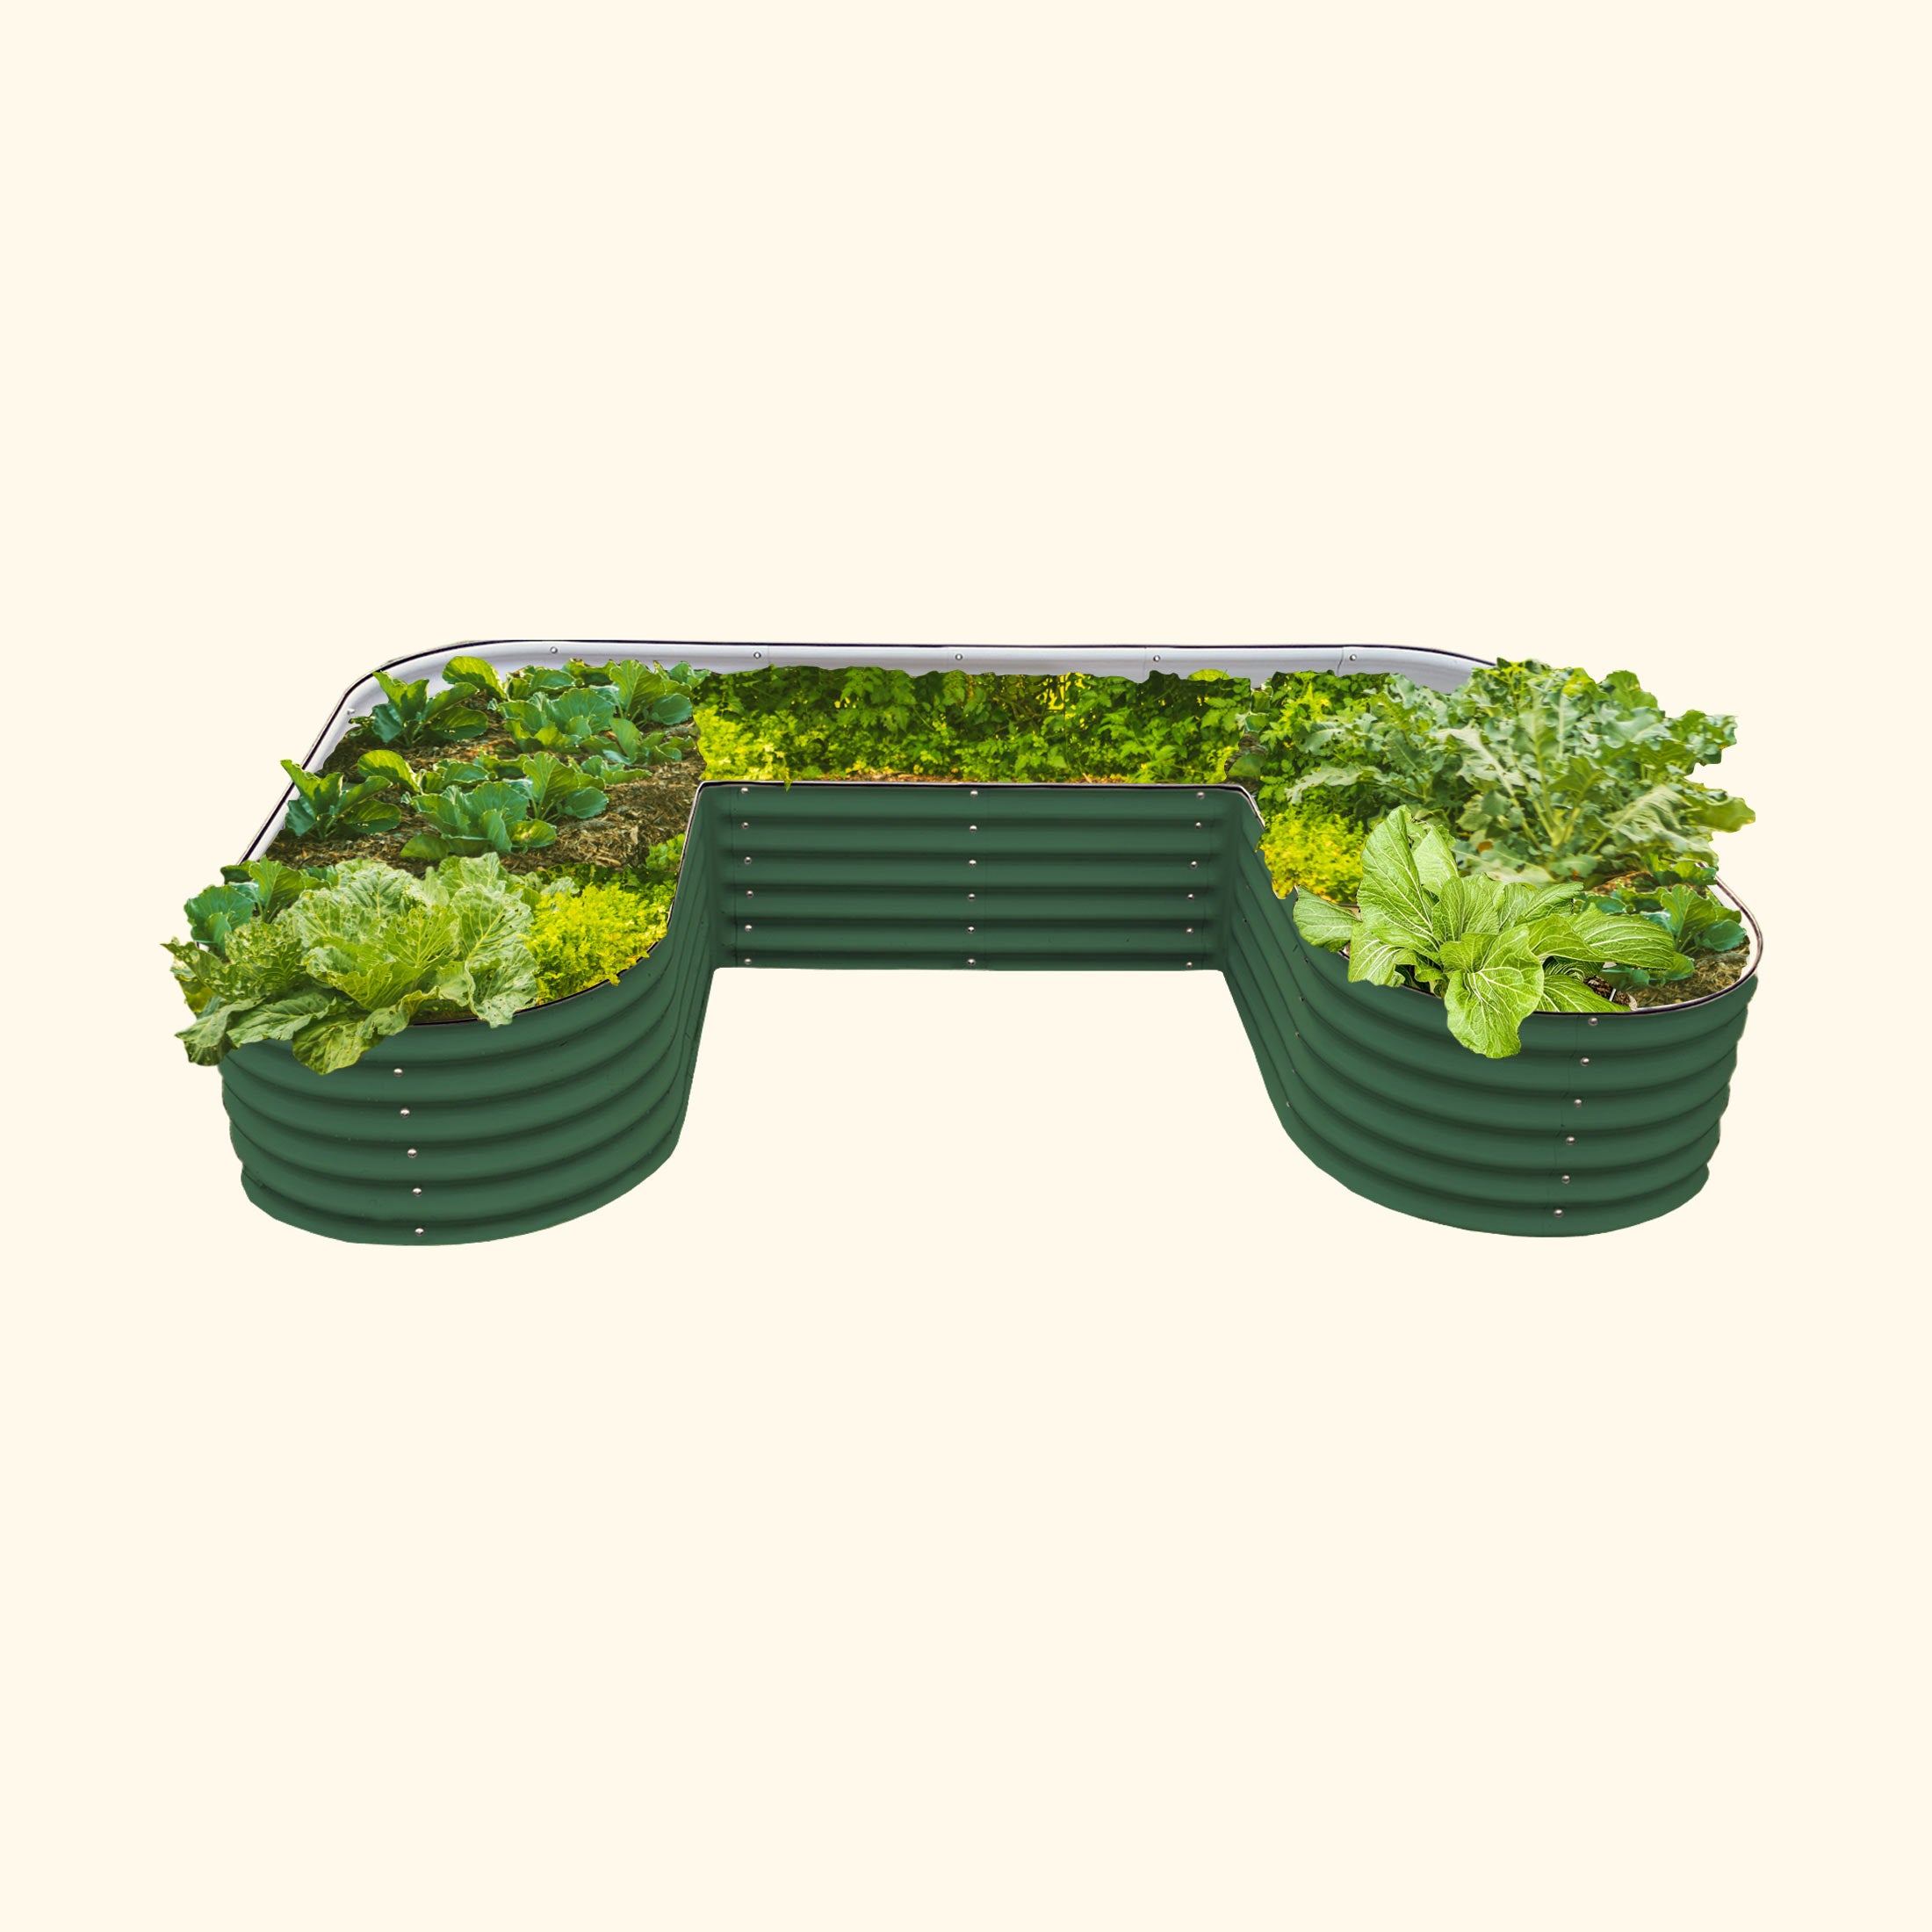 17 tall U-shaped metal garden container - Standard Size | British Green | Vego Garden raised garden bed